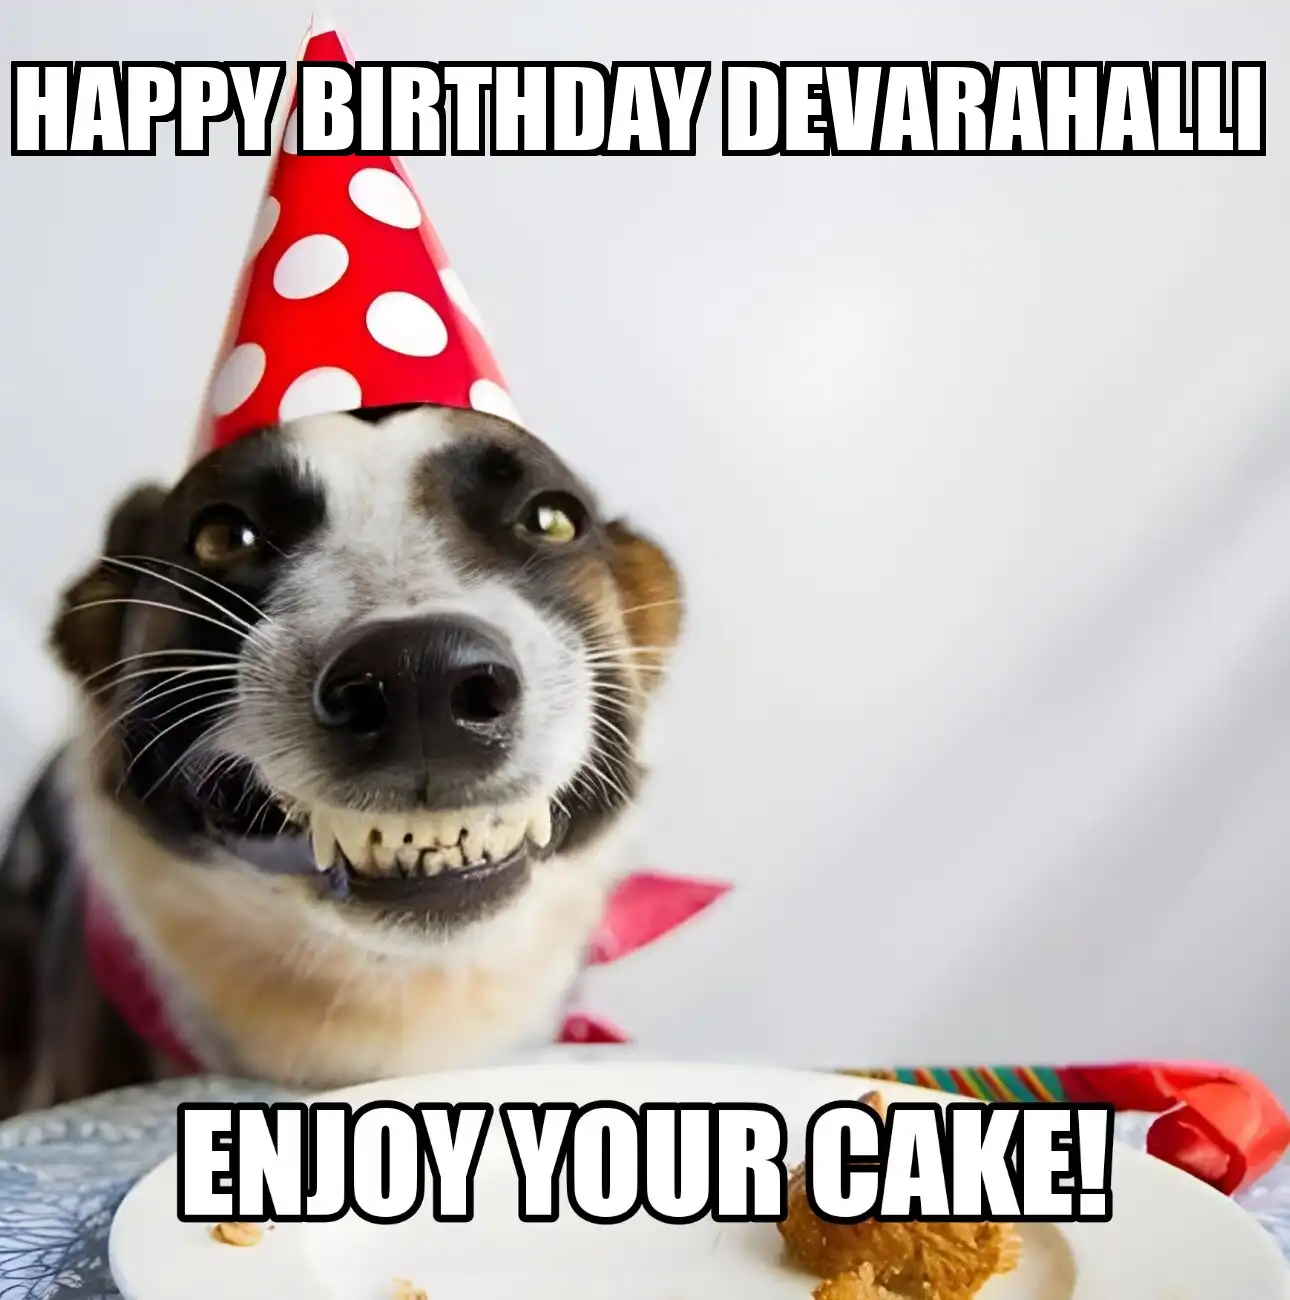 Happy Birthday Devarahalli Enjoy Your Cake Dog Meme